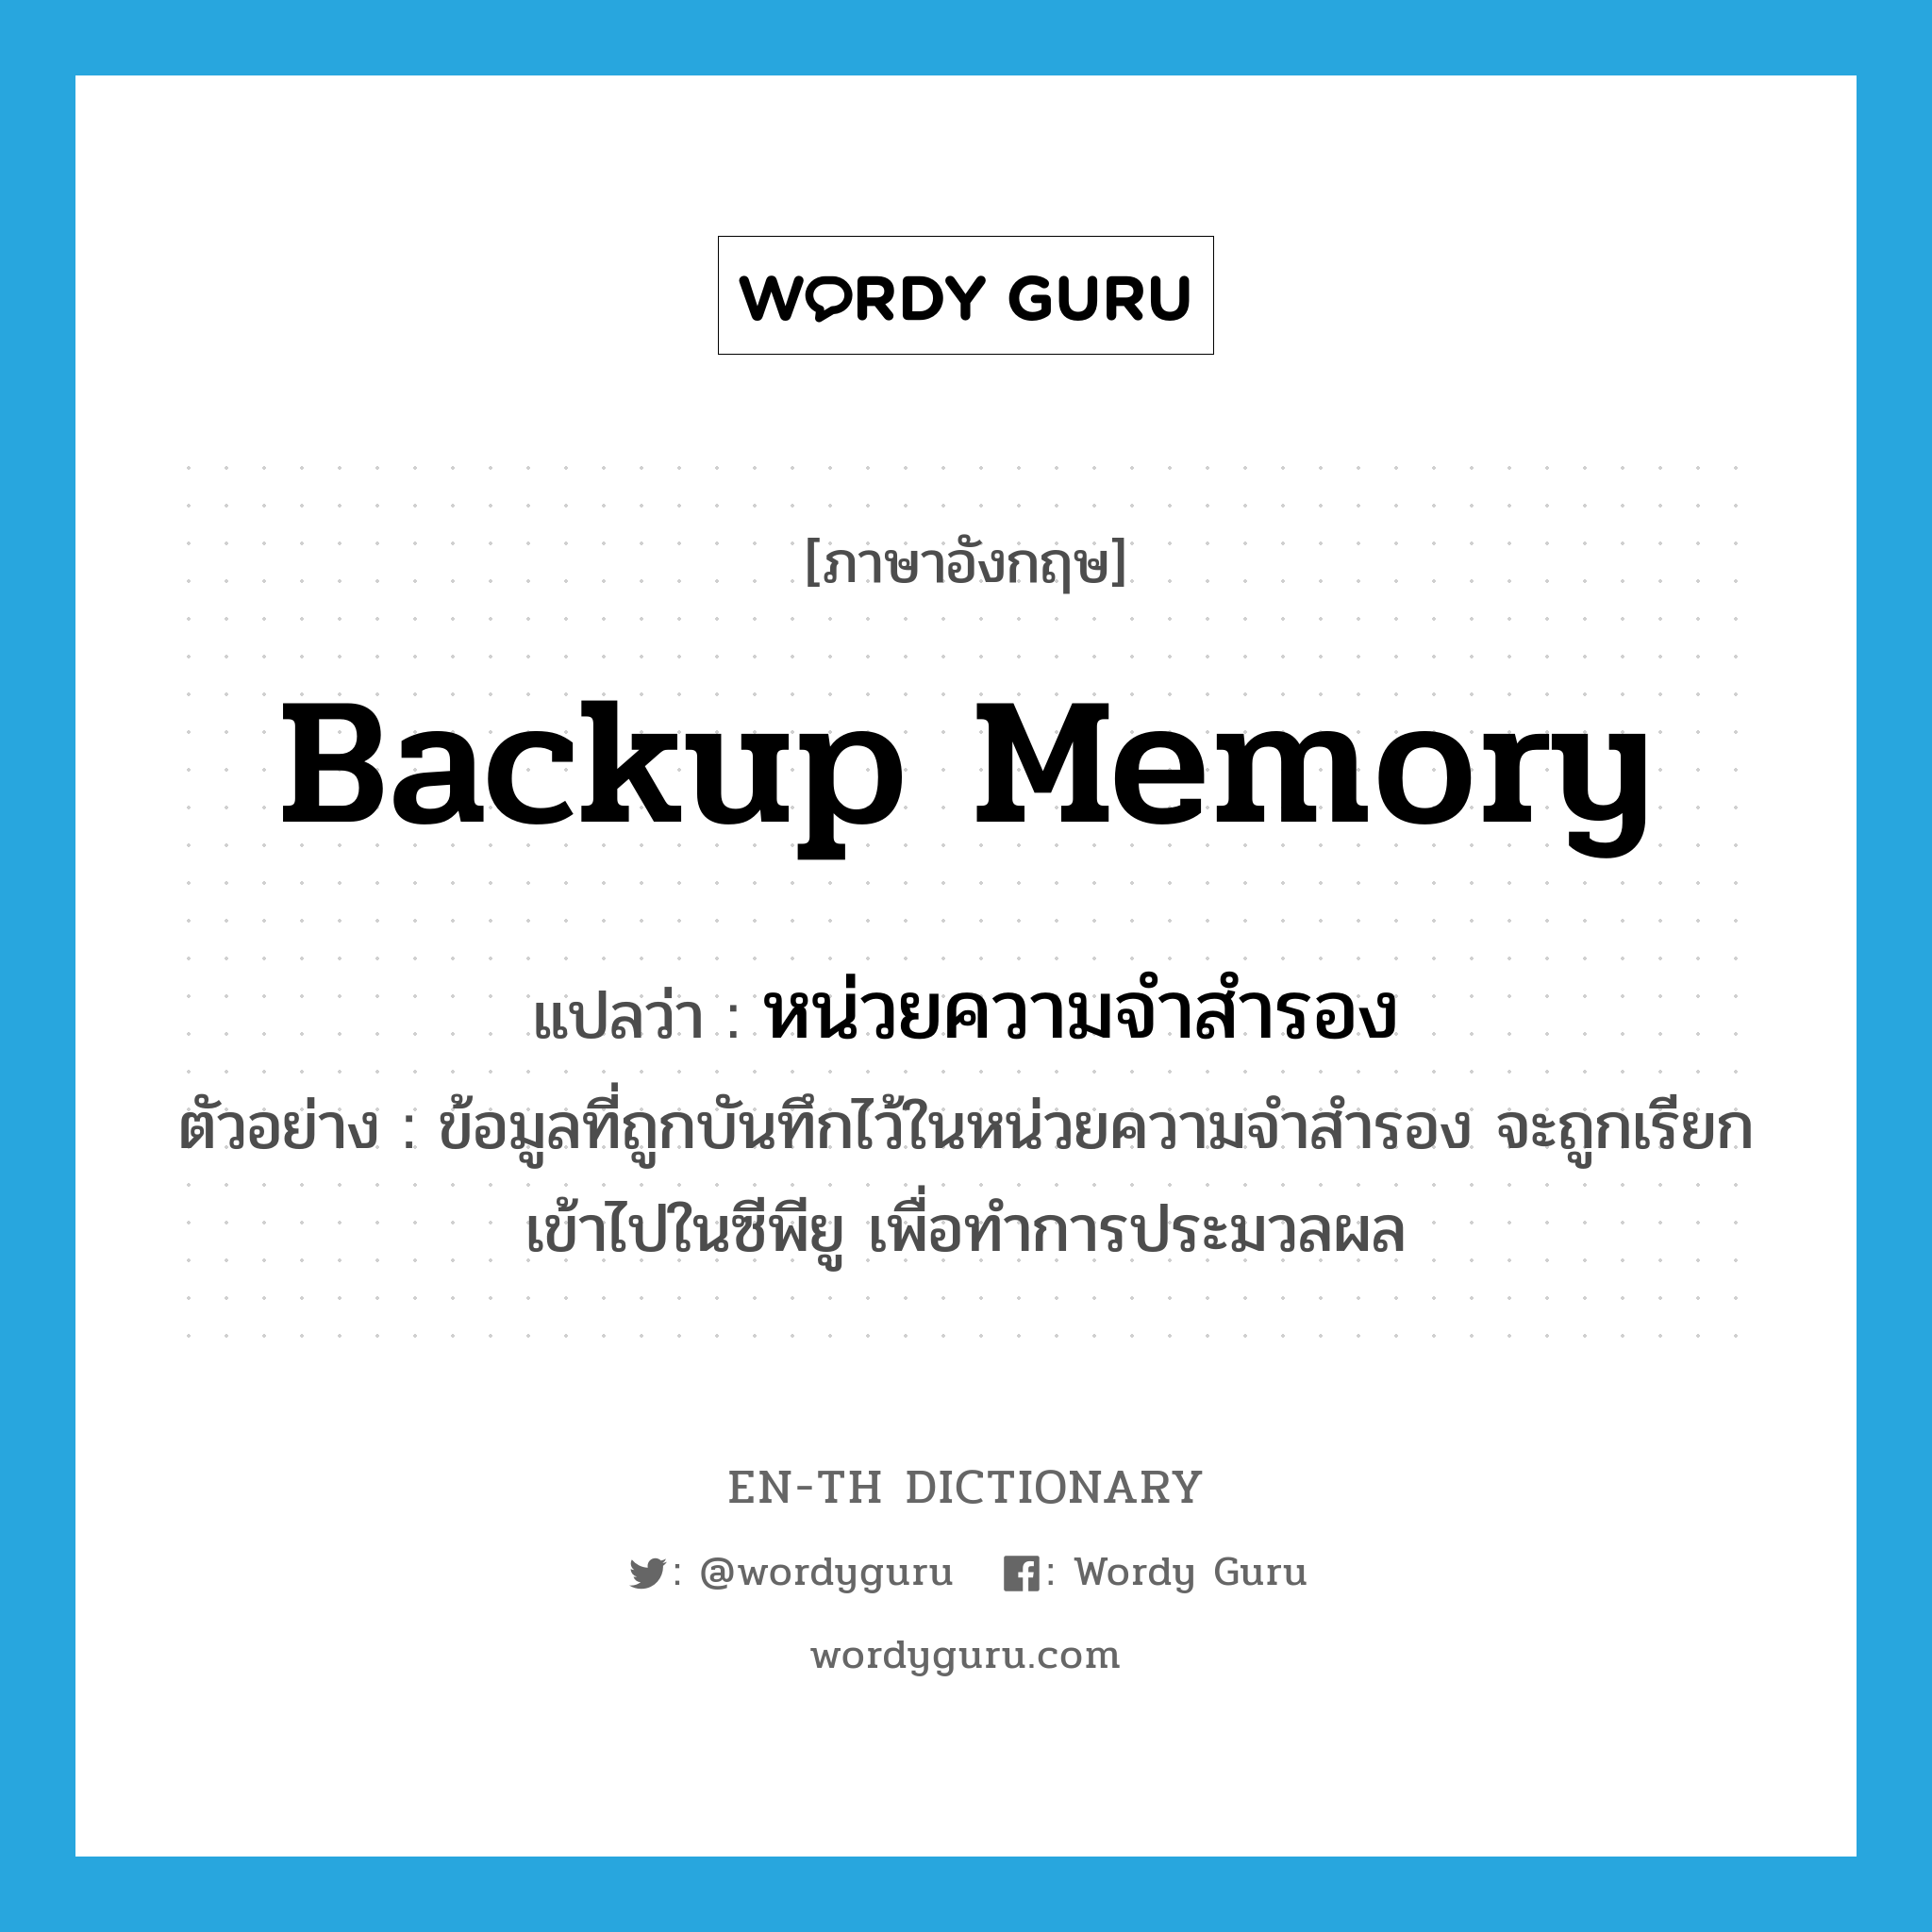 หน่วยความจำสำรอง ภาษาอังกฤษ?, คำศัพท์ภาษาอังกฤษ หน่วยความจำสำรอง แปลว่า backup memory ประเภท N ตัวอย่าง ข้อมูลที่ถูกบันทึกไว้ในหน่วยความจำสำรอง จะถูกเรียกเข้าไปในซีพียู เพื่อทำการประมวลผล หมวด N